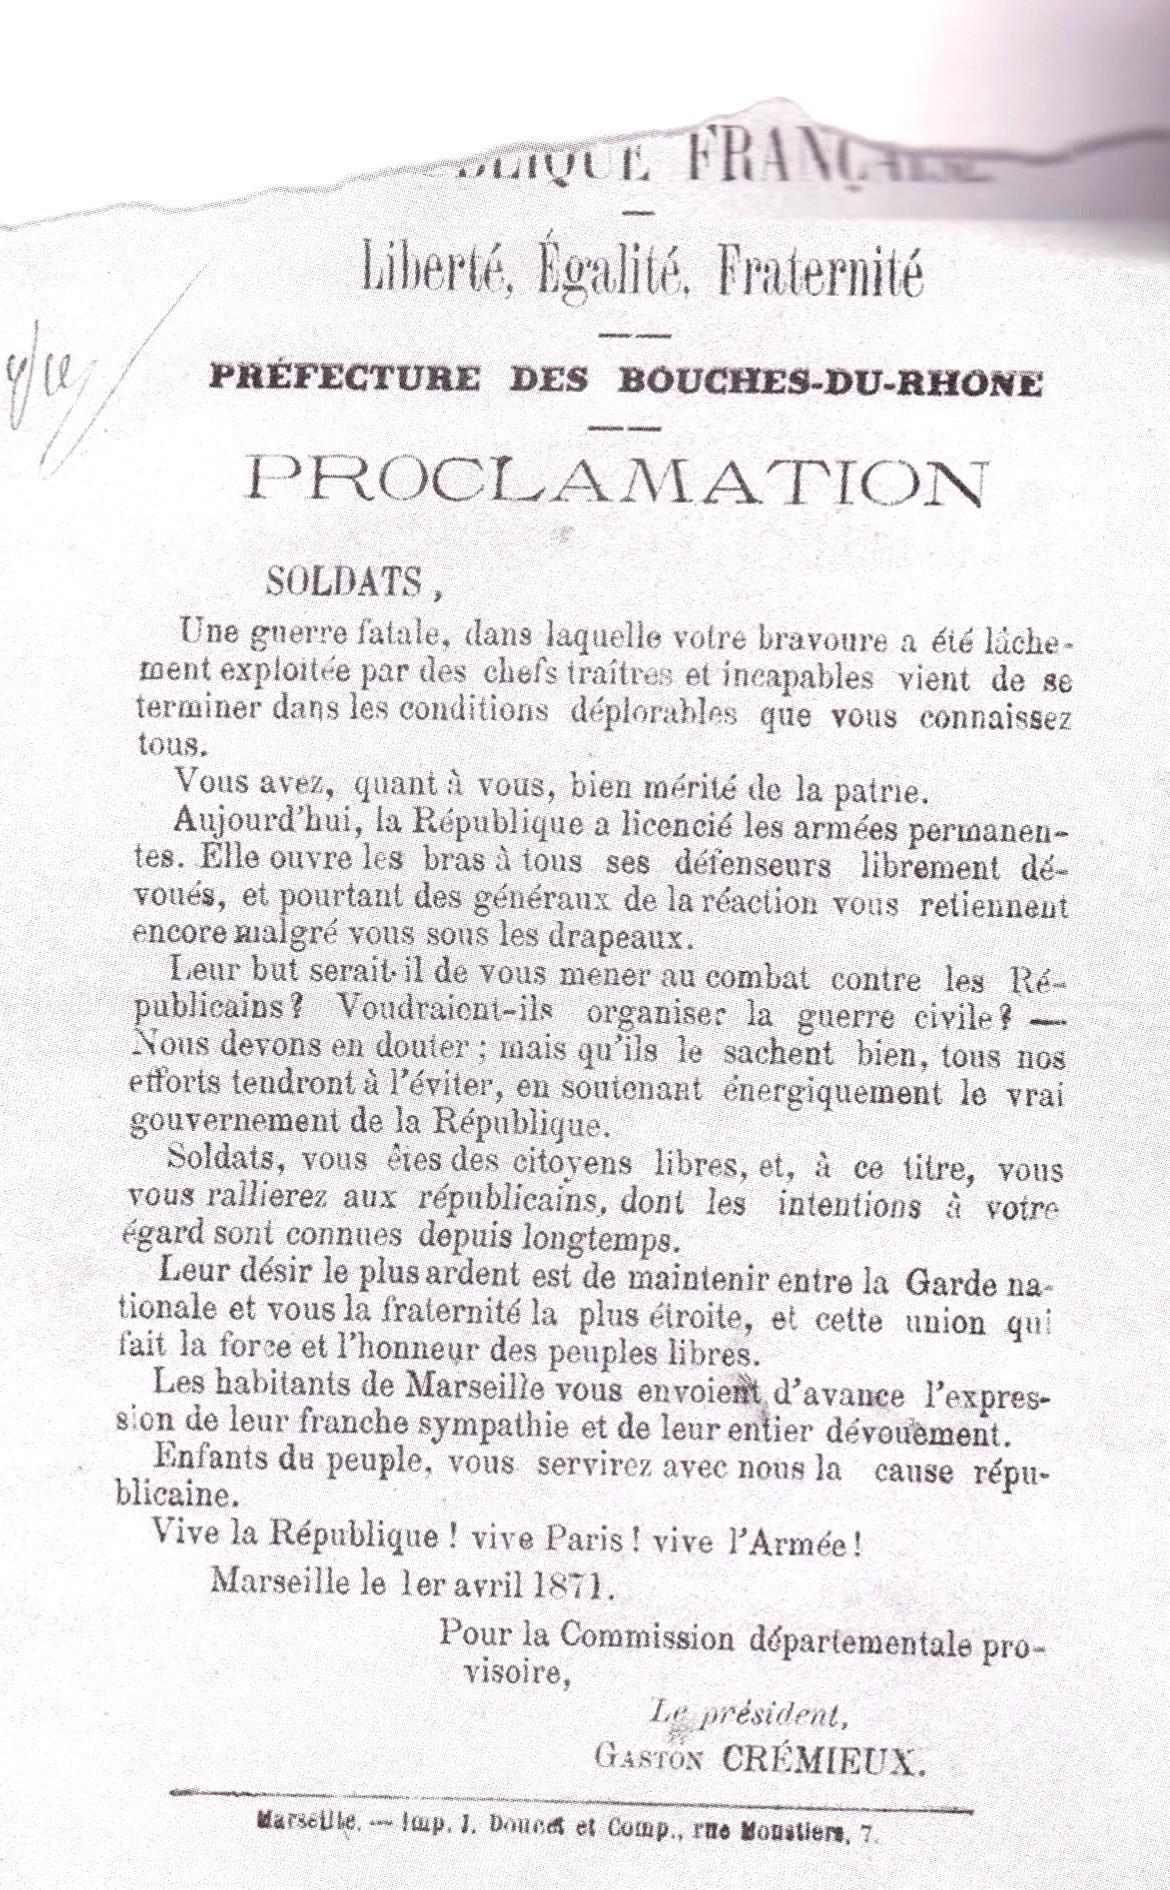 Affiche de la Commission départementale provisoire, proclamation aux soldats, signée de Gaston Crémieux 1er avril 1871 (Collection Archives départementales des Bouches-du-Rhône)